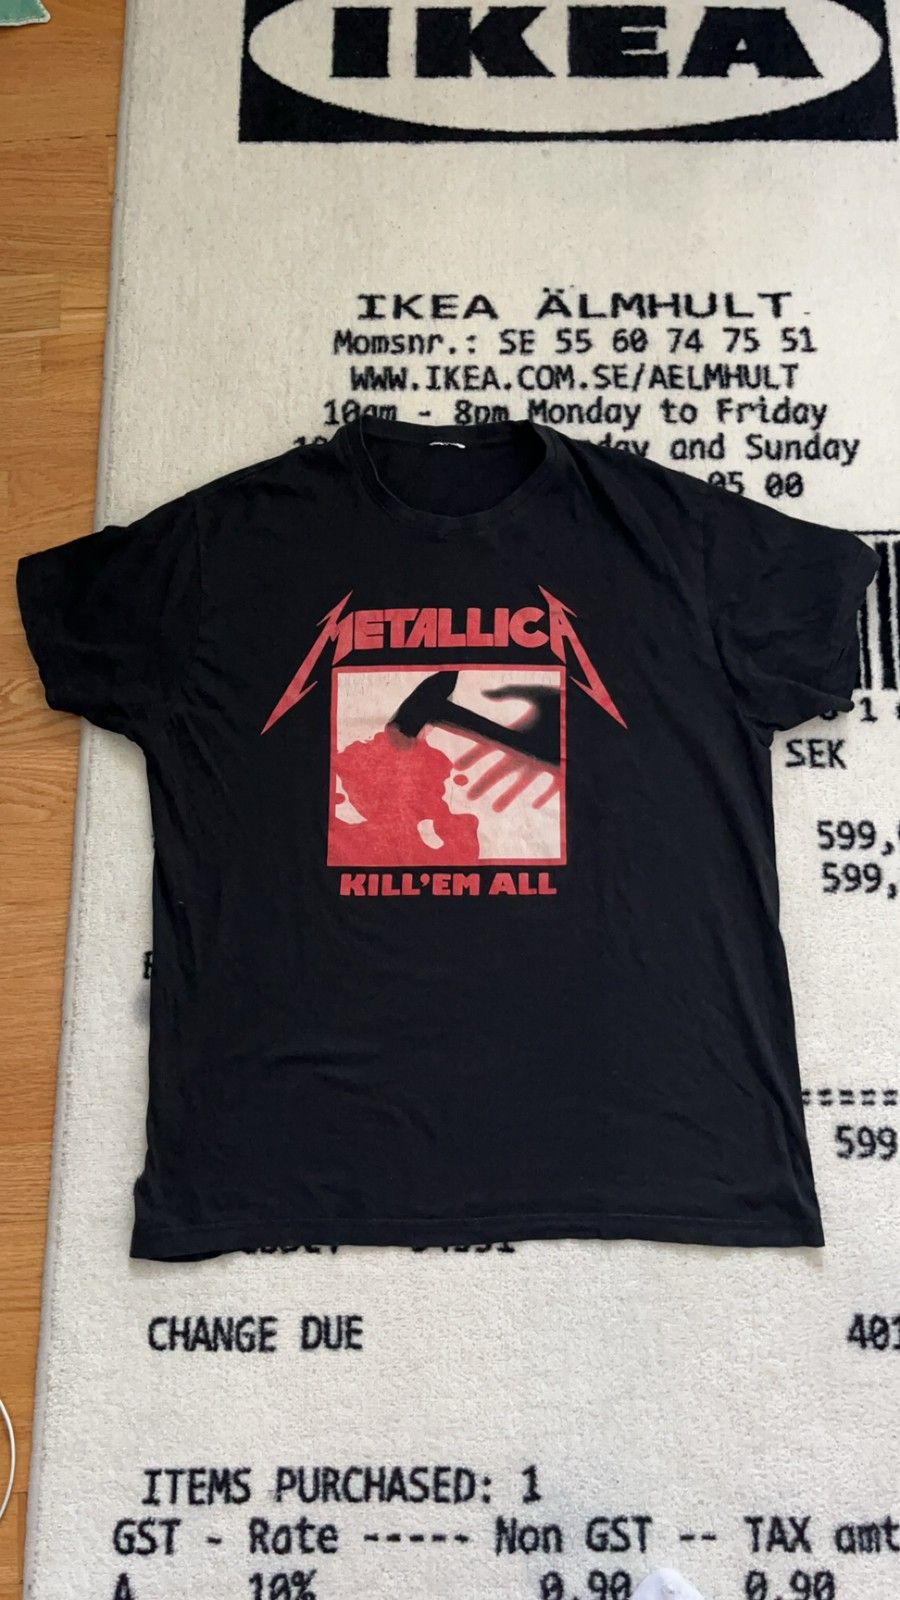 Metallica T-paita